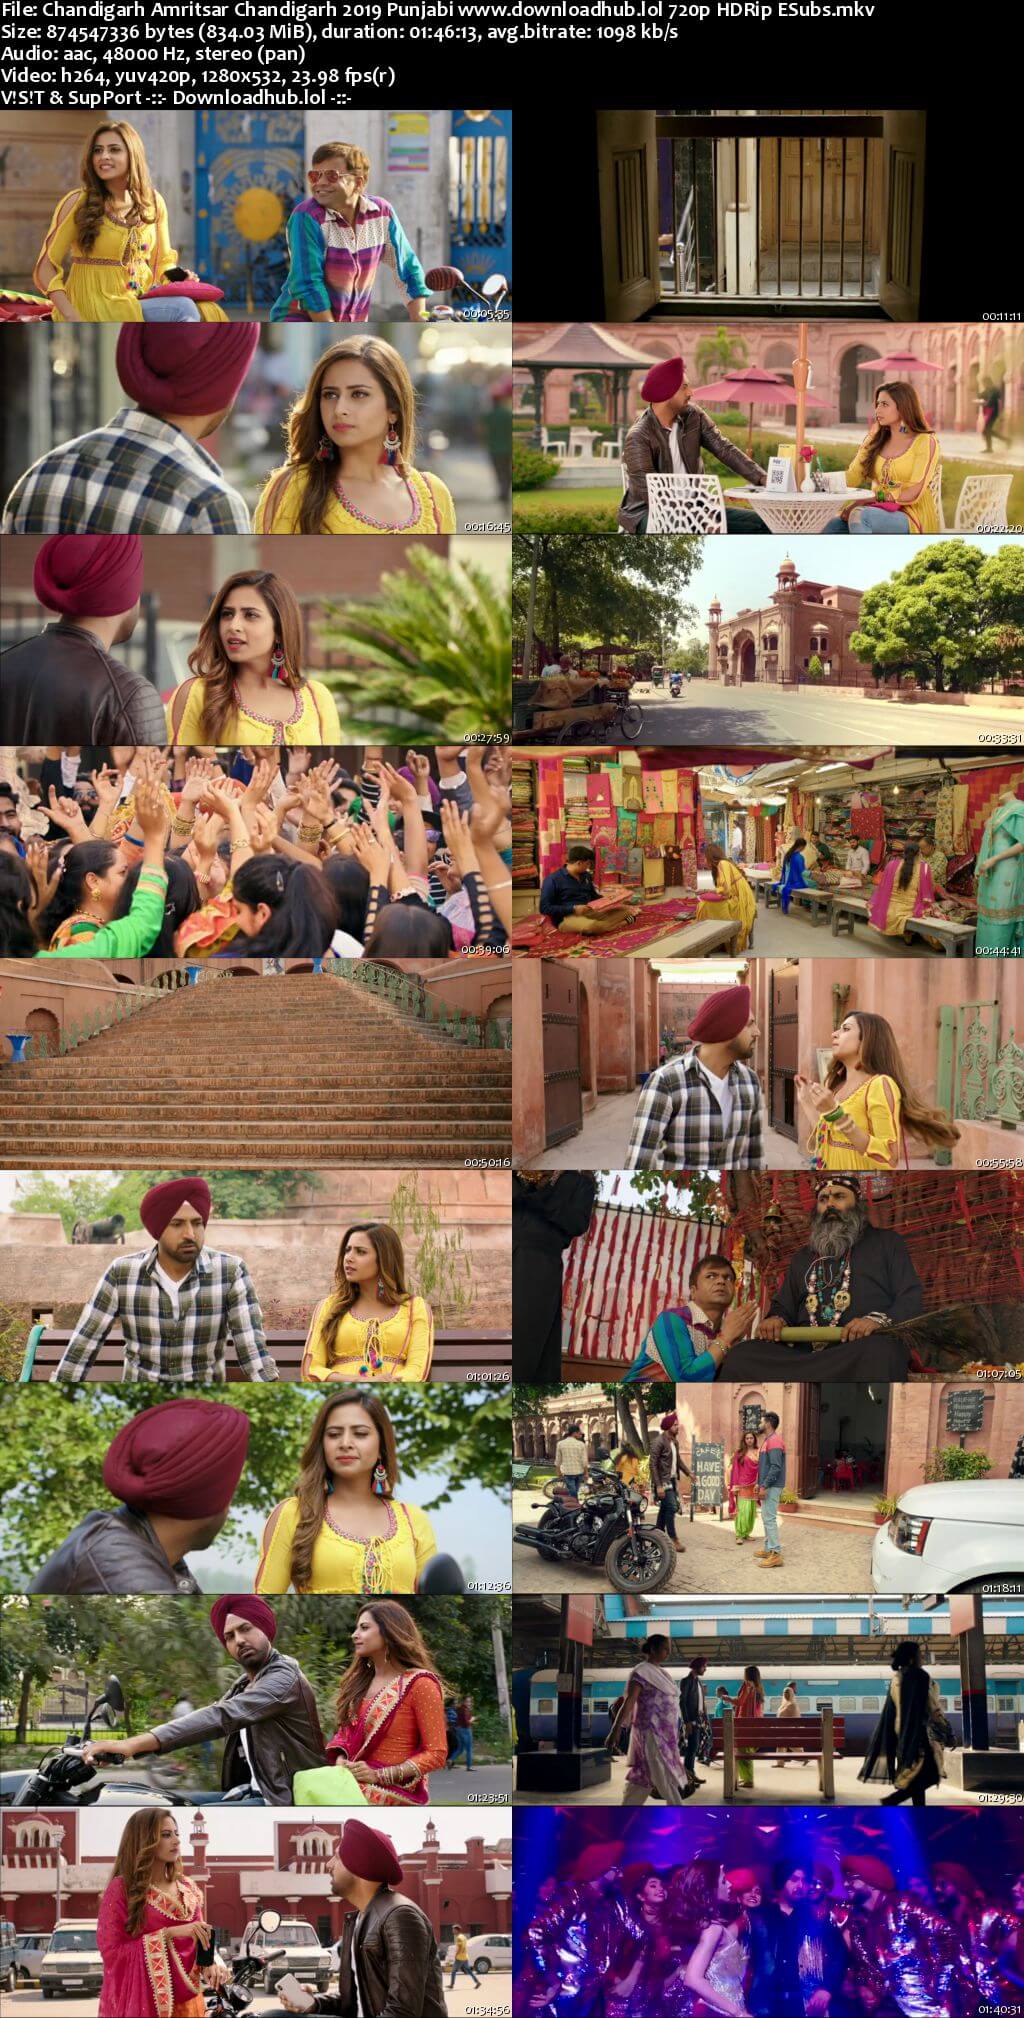 Chandigarh Amritsar Chandigarh 2019 Punjabi 720p HDRip ESubs